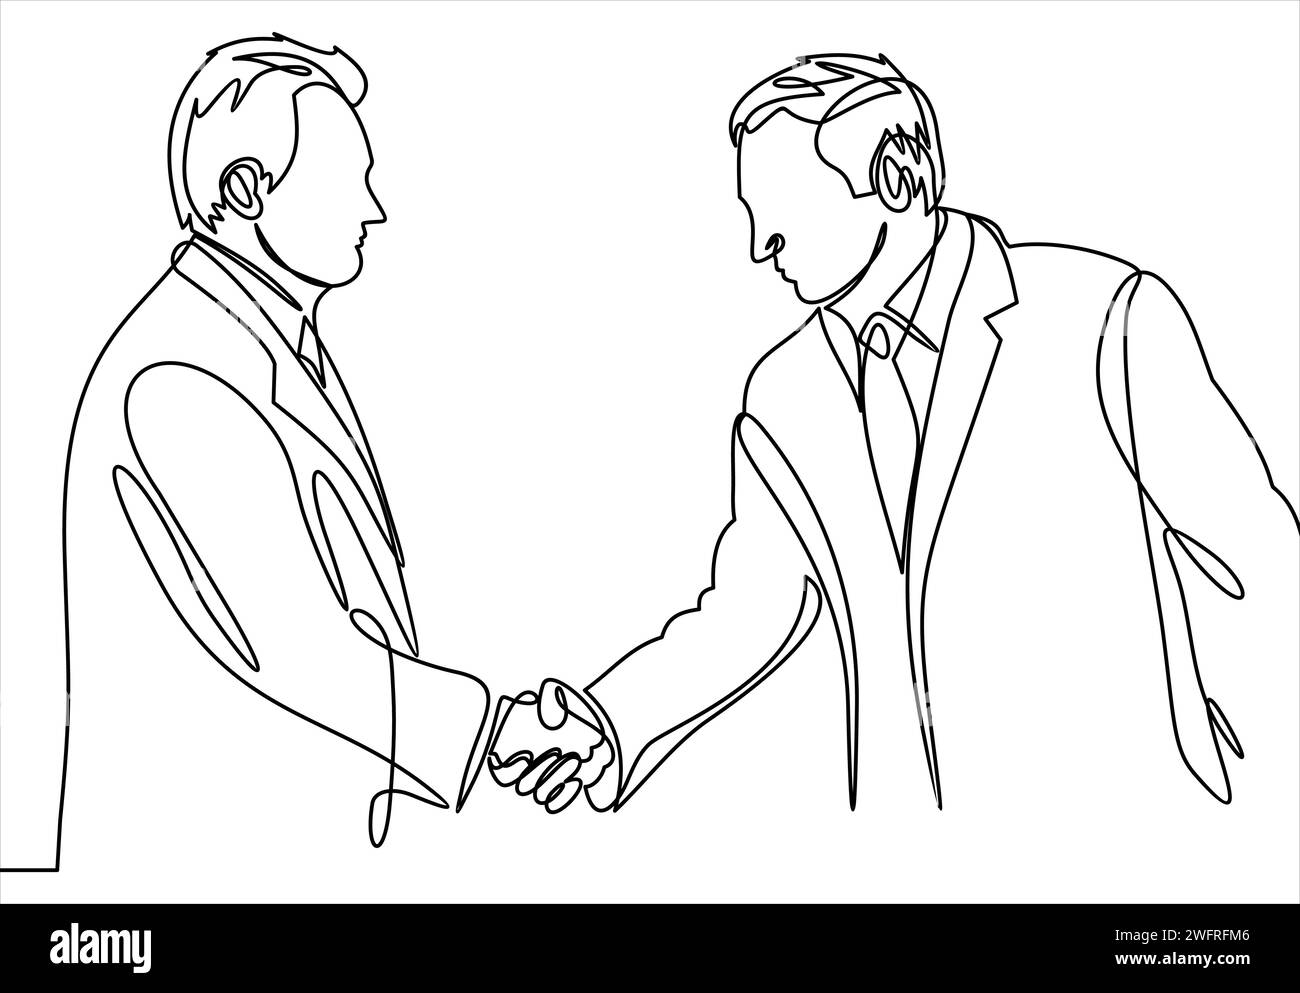 Un disegno di due uomini d'affari in valigia che stringono la mano e accettano di gestire un progetto. Disegno a linea singola del concetto aziendale. Illustrazione vettoriale Illustrazione Vettoriale